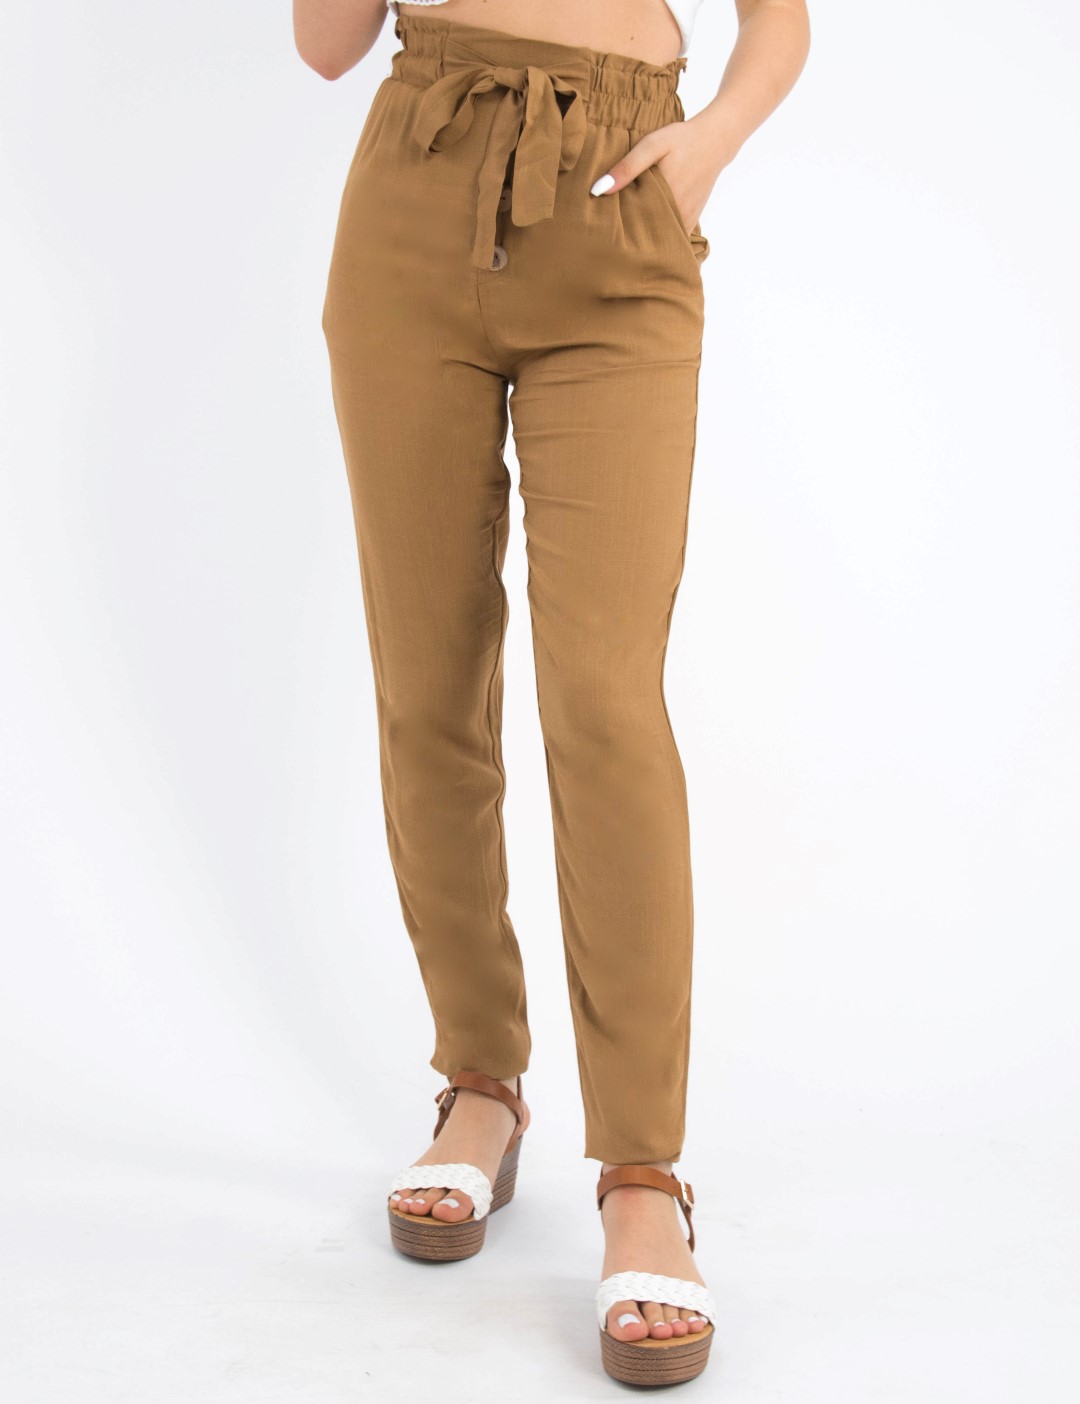 Γυναικείο κάμελ ψηλόμεσο υφασμάτινο παντελόνι κουμπιά 190271V